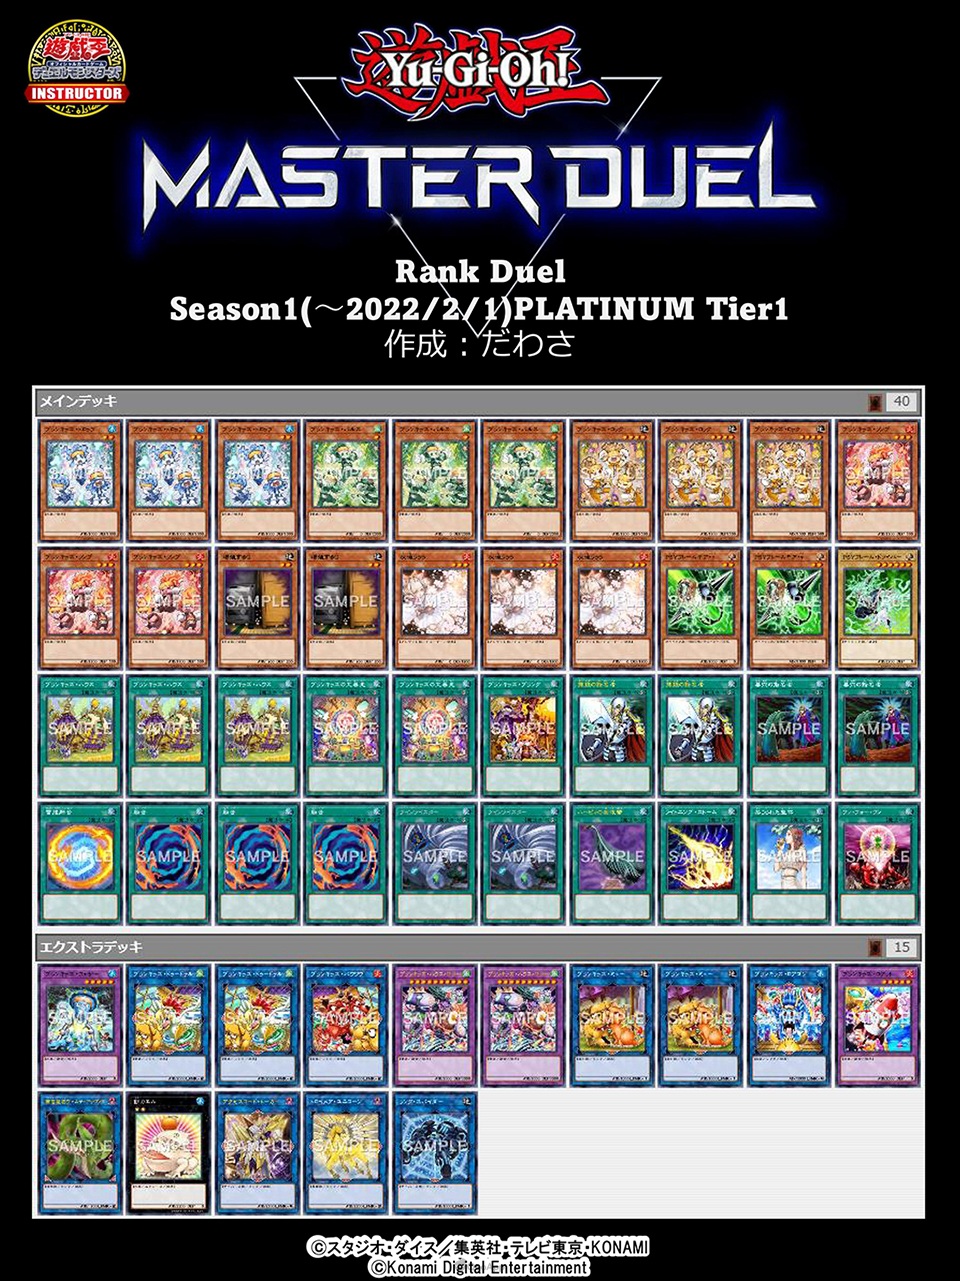 《遊戲王 Master Duel》突破千萬下載！Season 1白金牌組公開-第33張